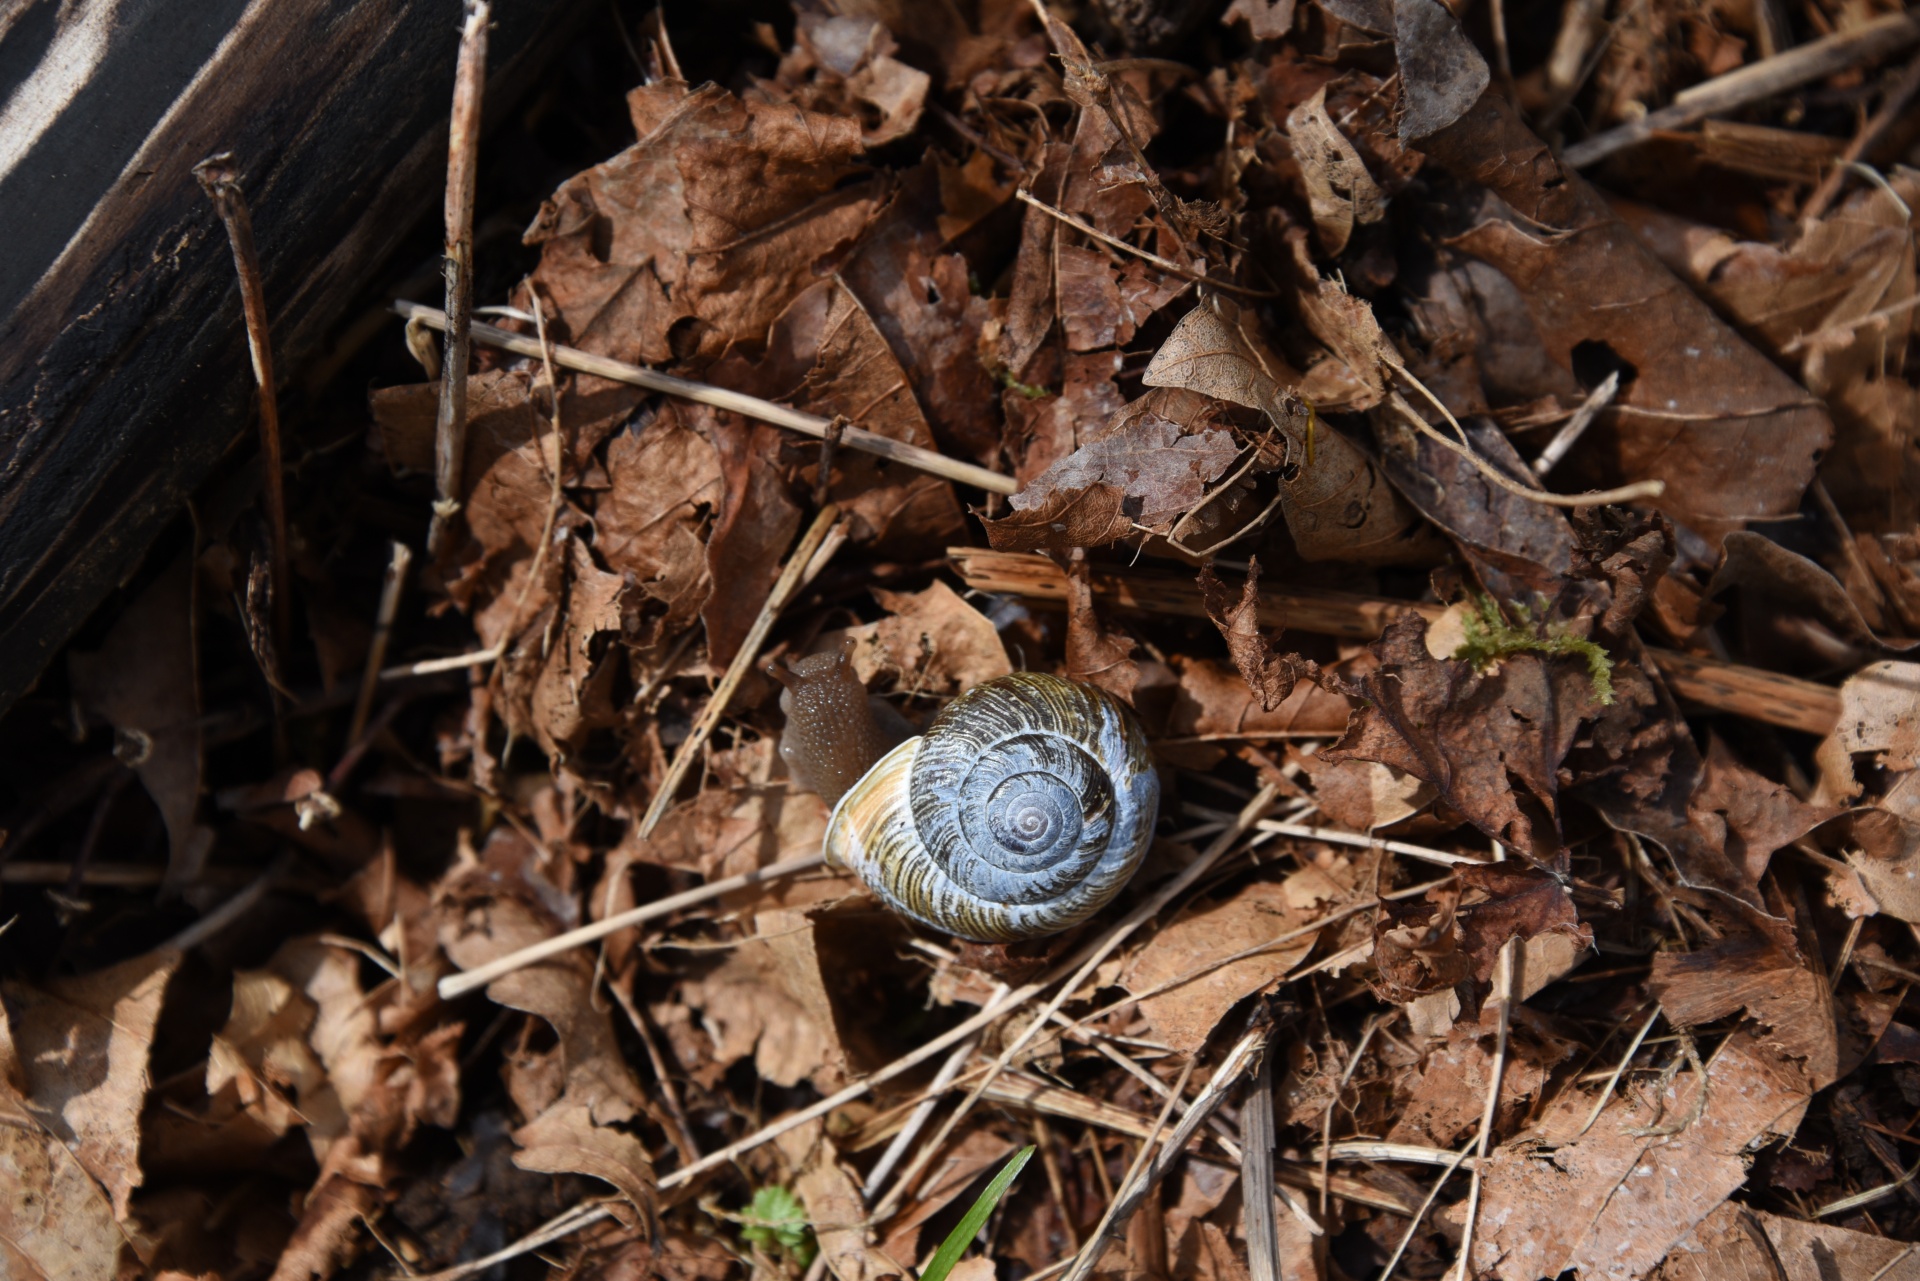 Blue Shell Snail